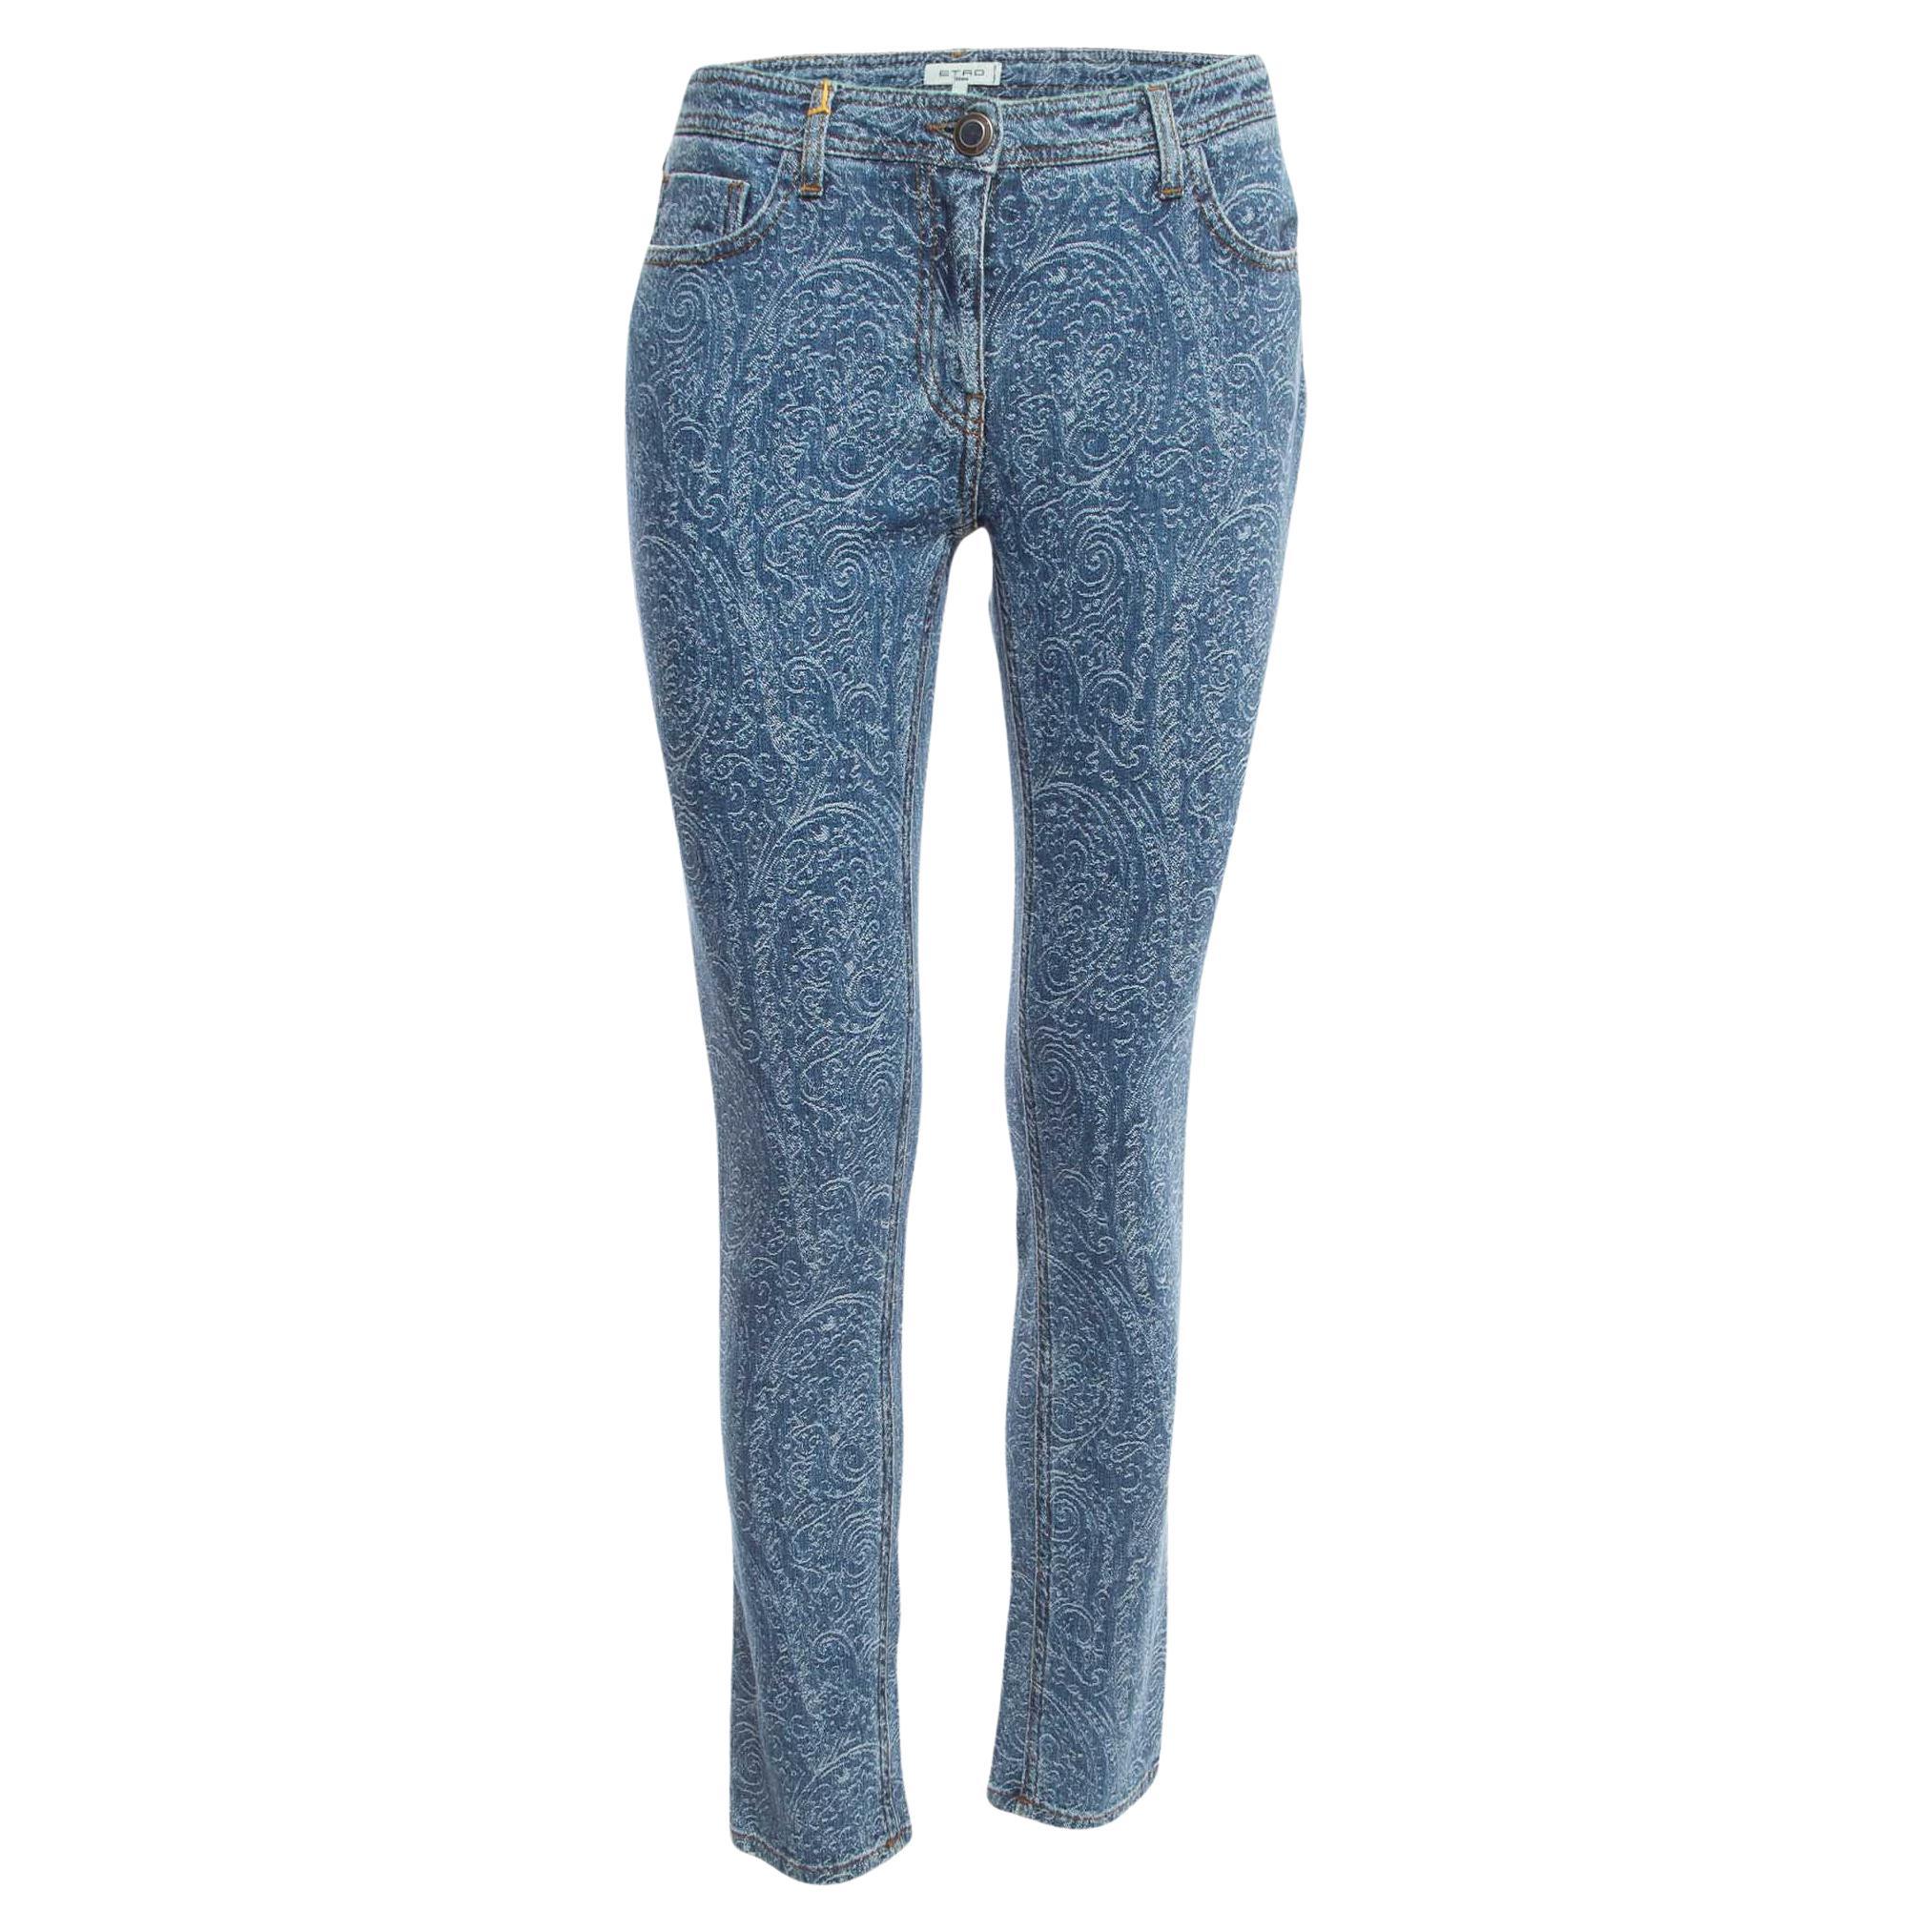 Etro Blue Paisley Jacquard Denim Jeans L Waist 31"